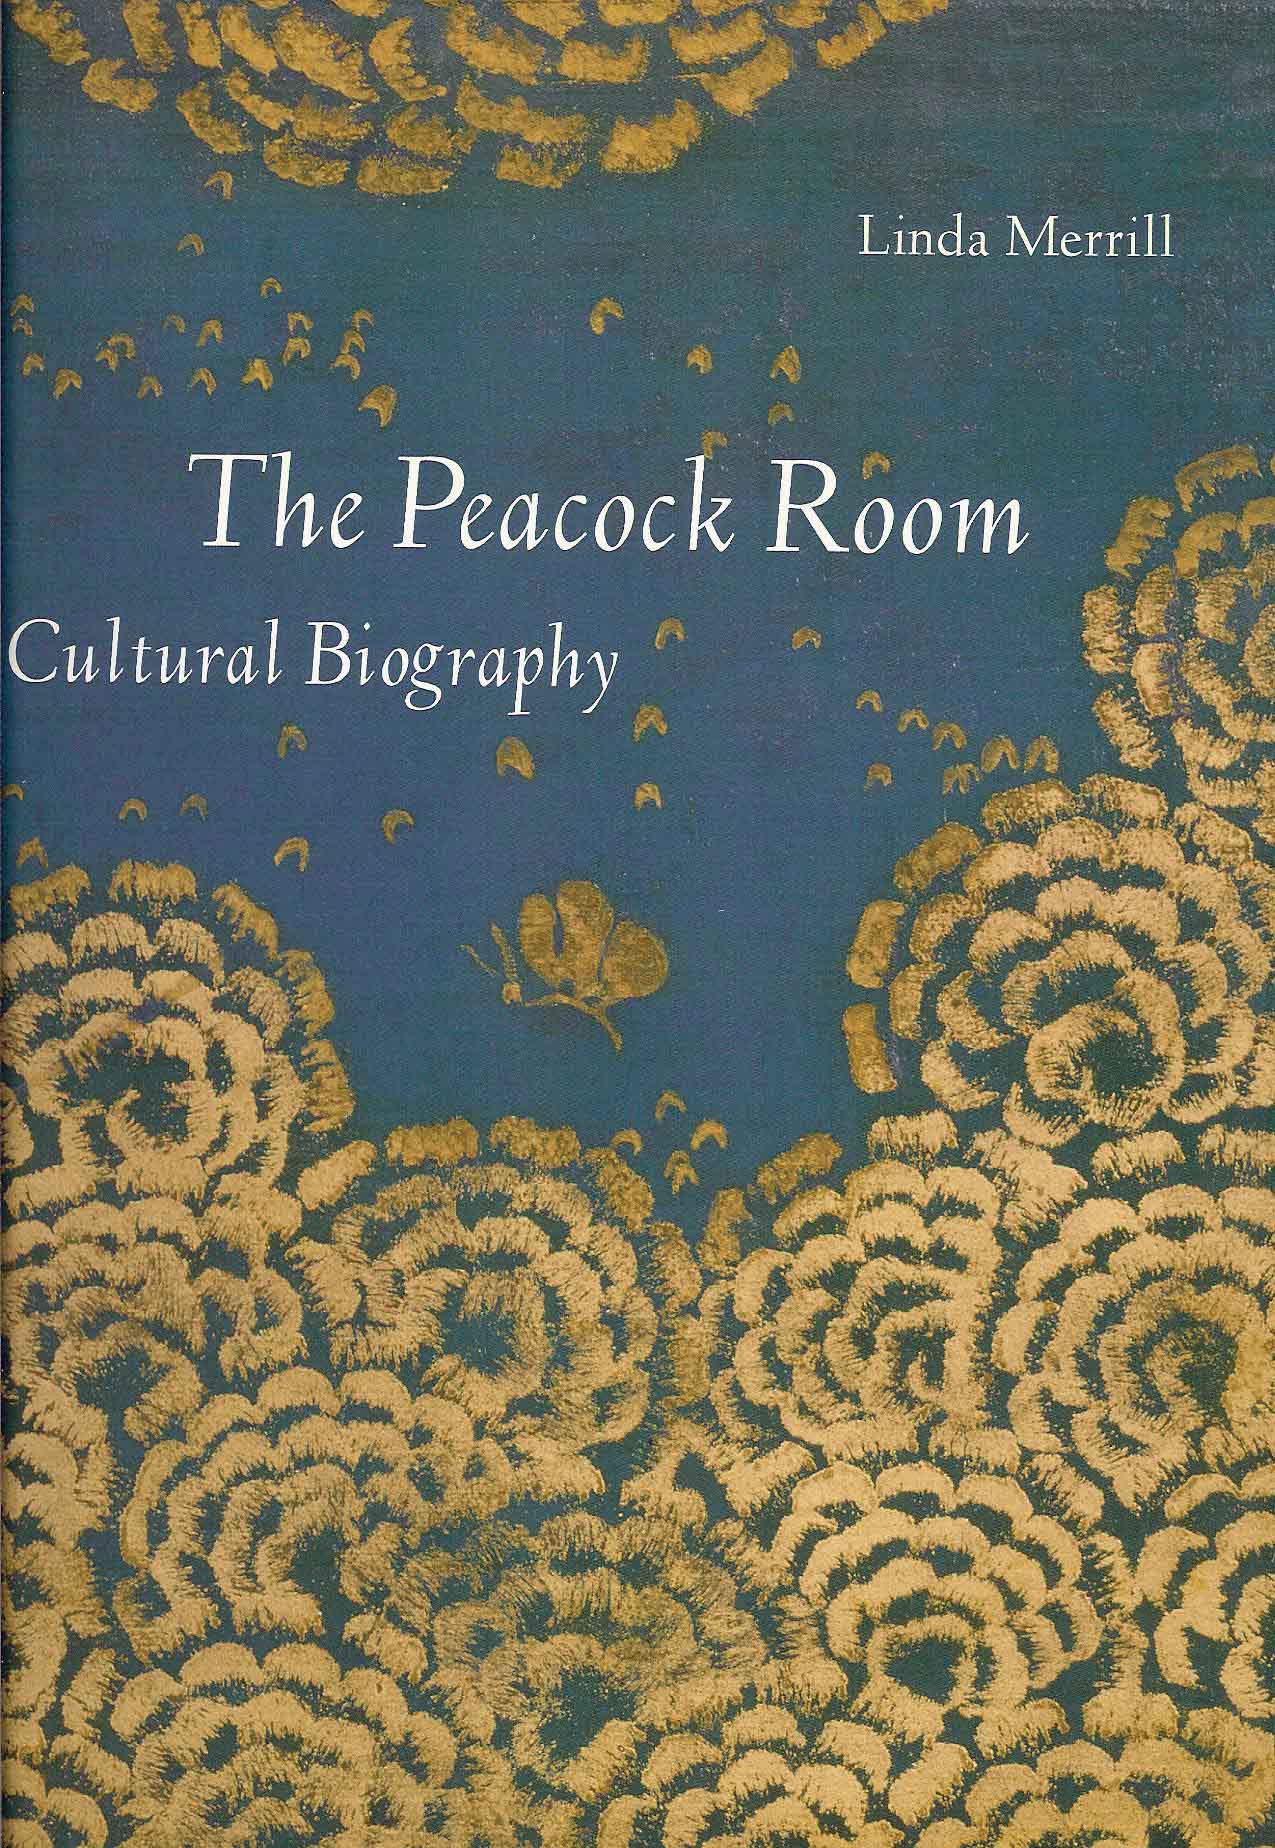 Merrill, Linda - The Peacock Room: A cultural biography